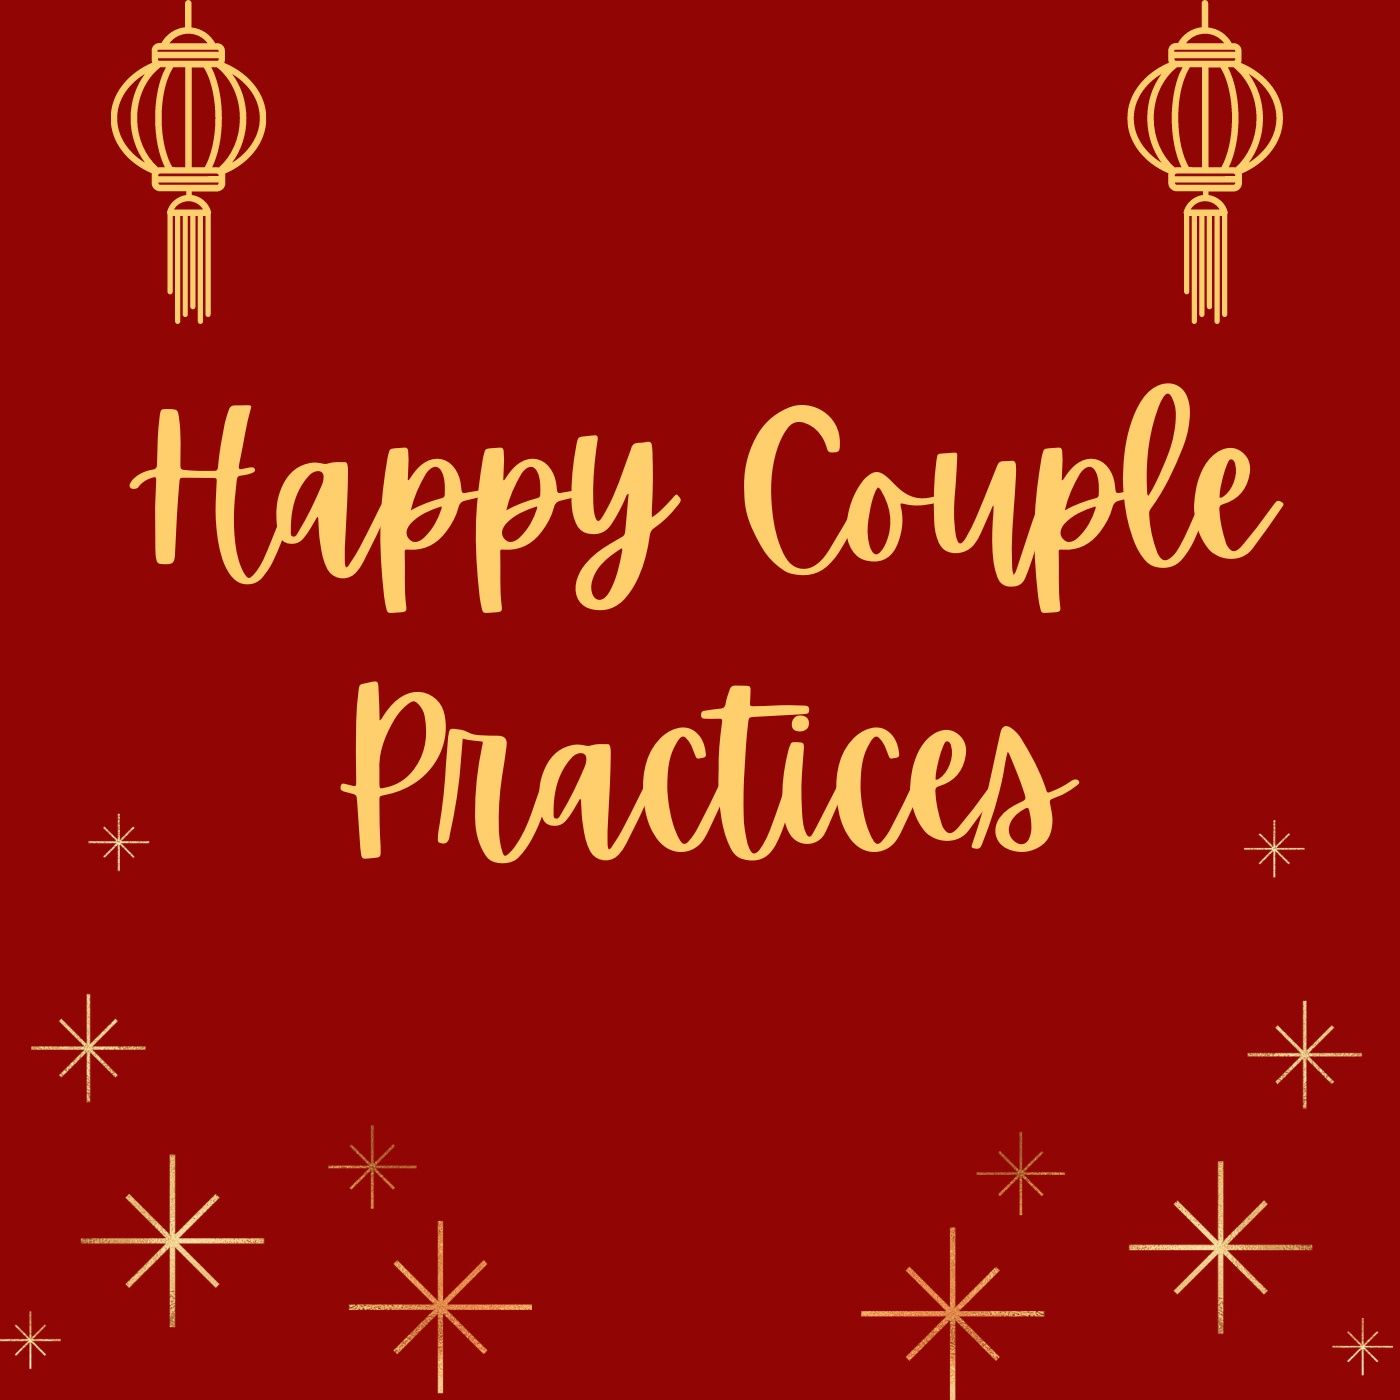 Happy Couple Practices